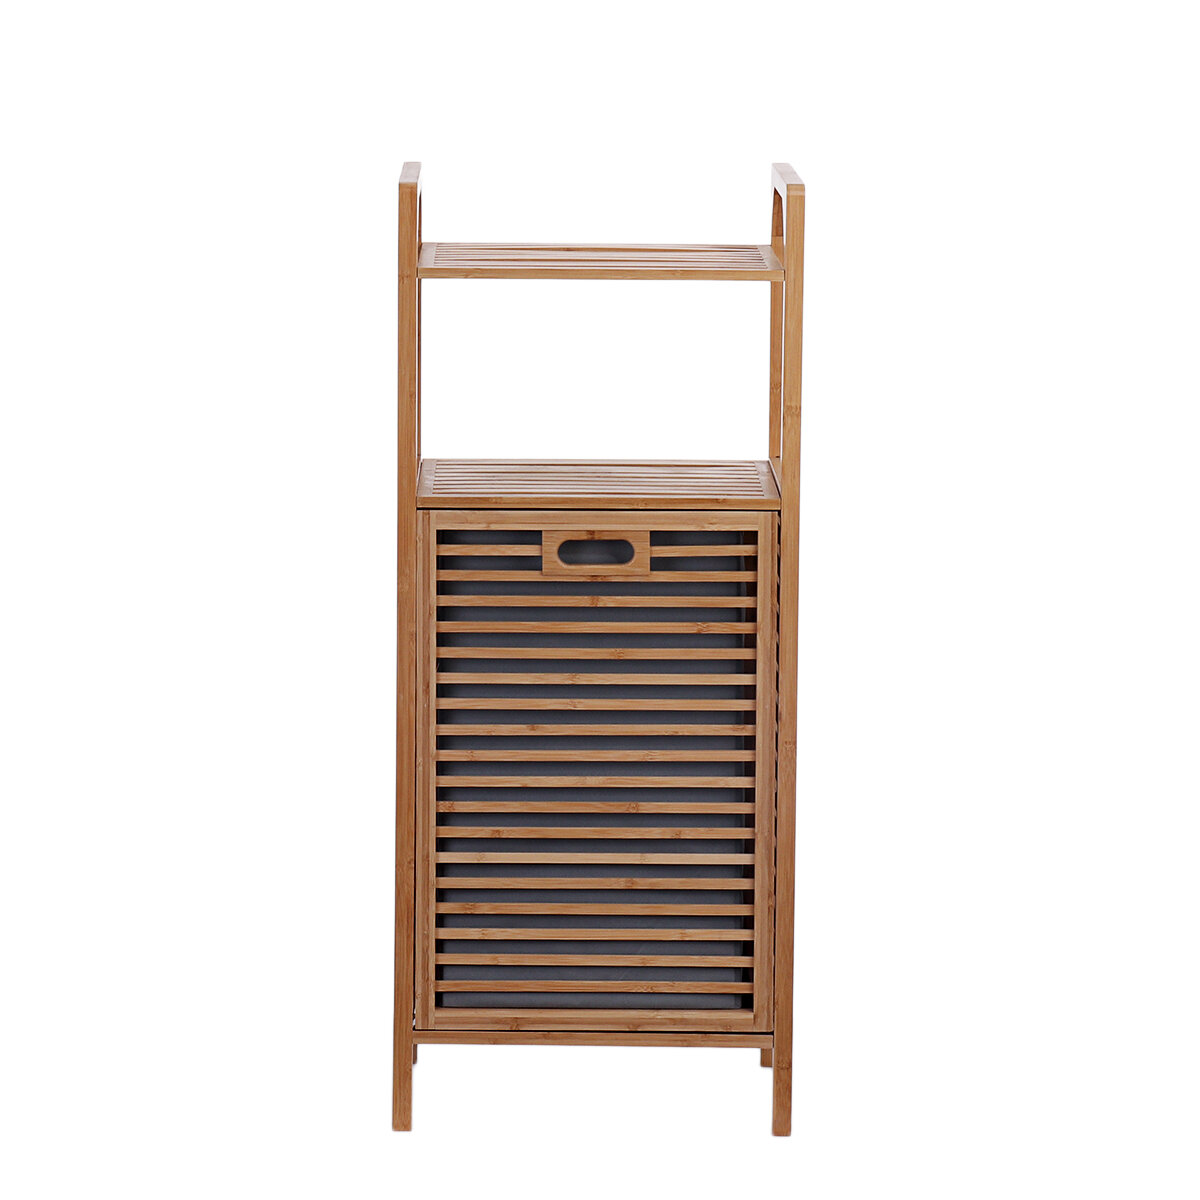 

Бамбуковый шкаф для хранения грязной одежды Корзина для белья Корзина Ванная комната Стеллаж